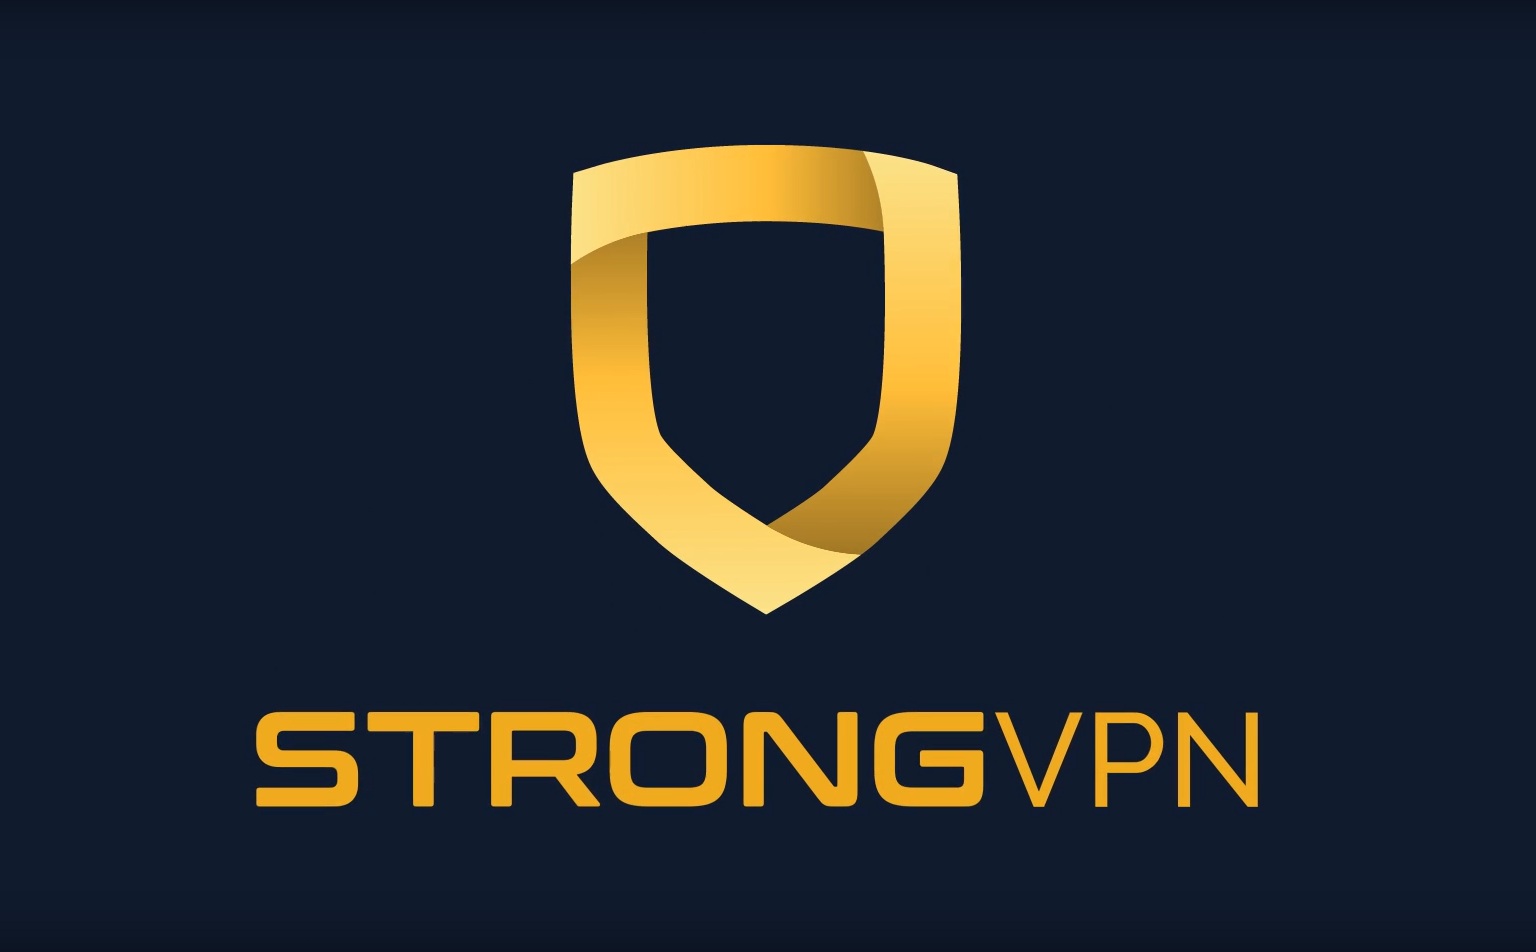 strongvpn logos